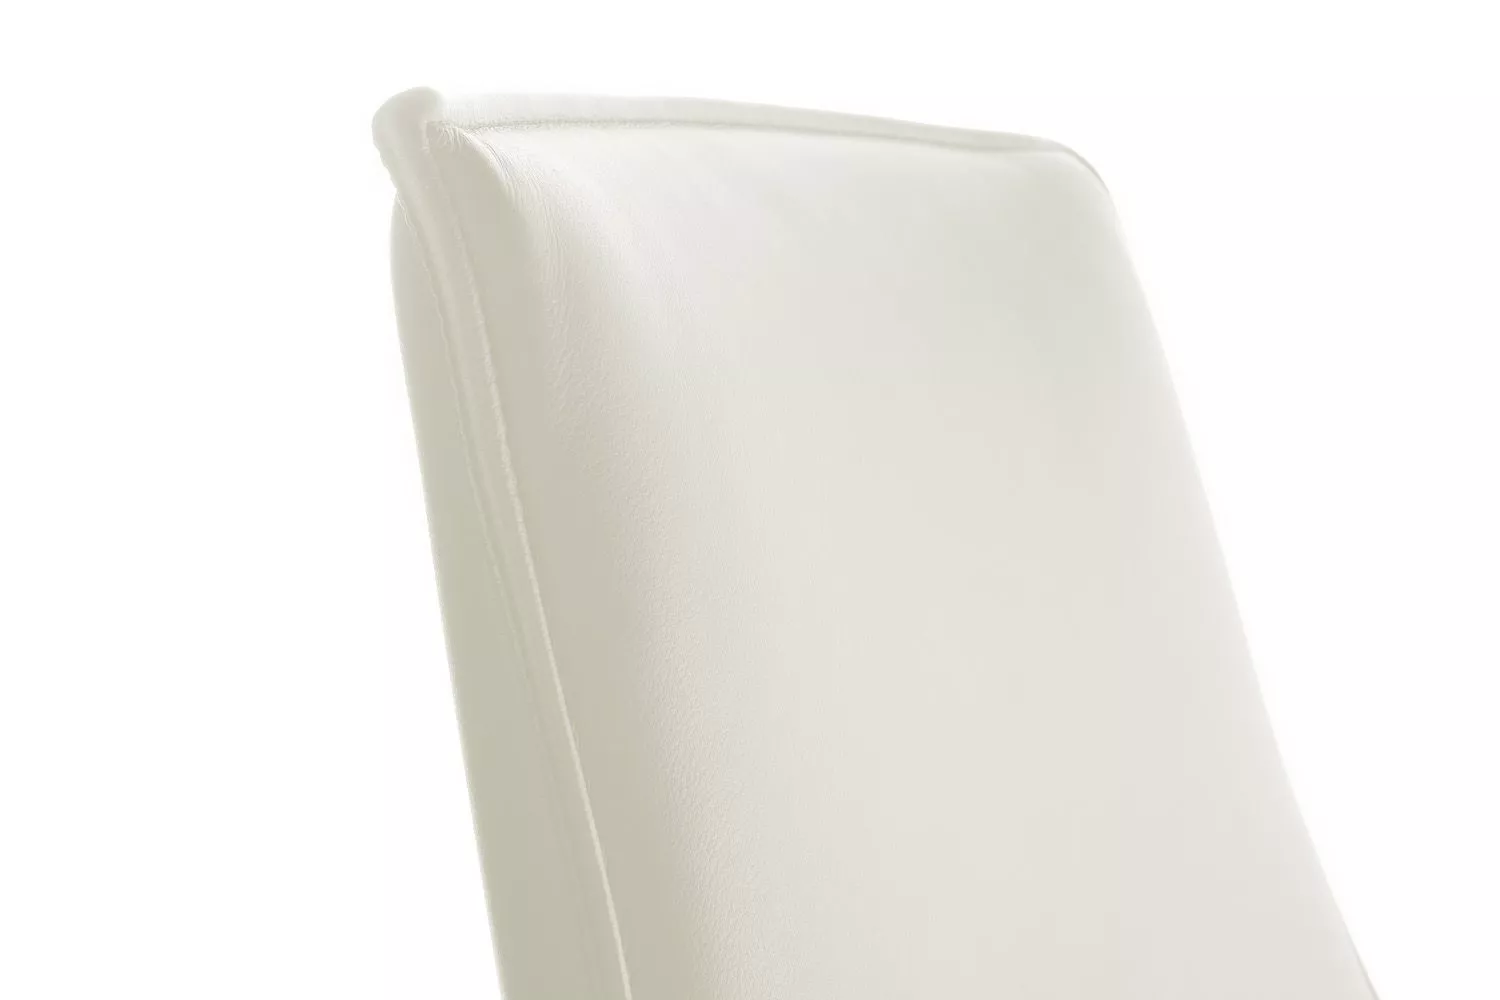 Кресло RIVA DESIGN Rosso-M (B1918) белый